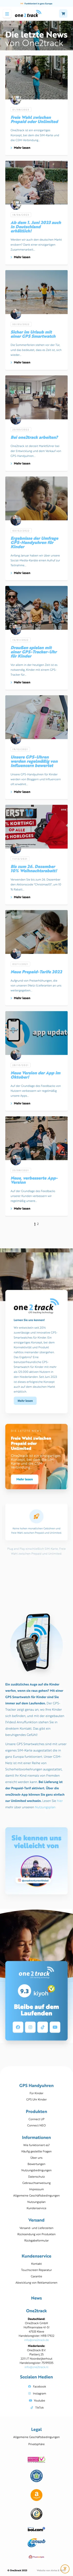 Website One2track.de